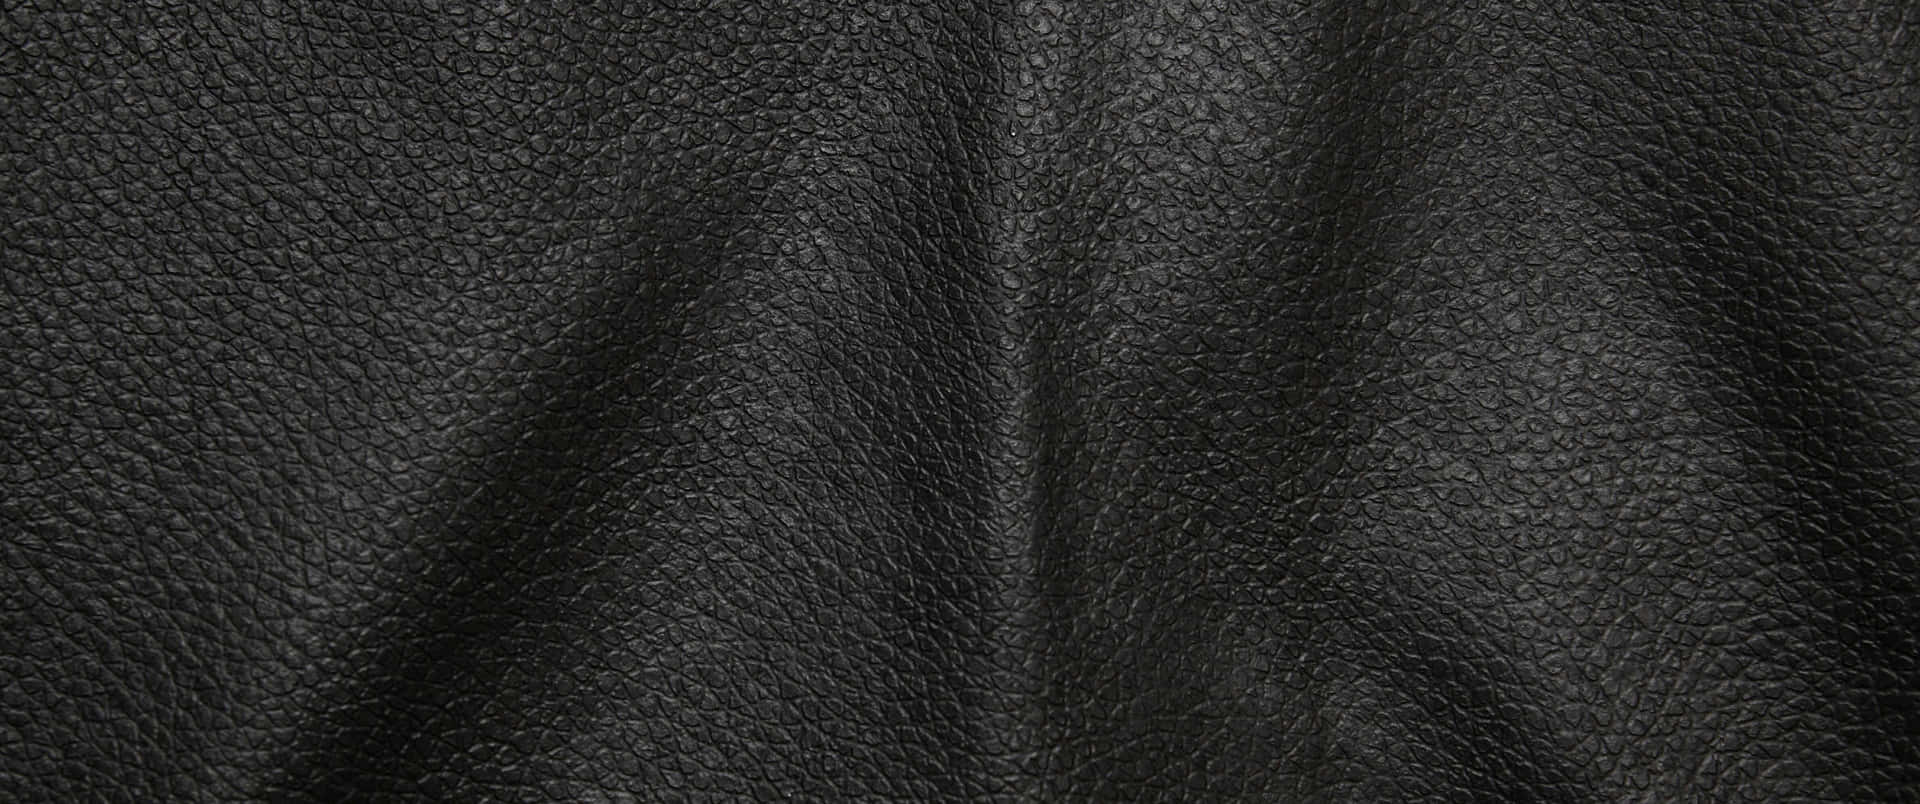 Leather Texture Black Bulges Wallpaper